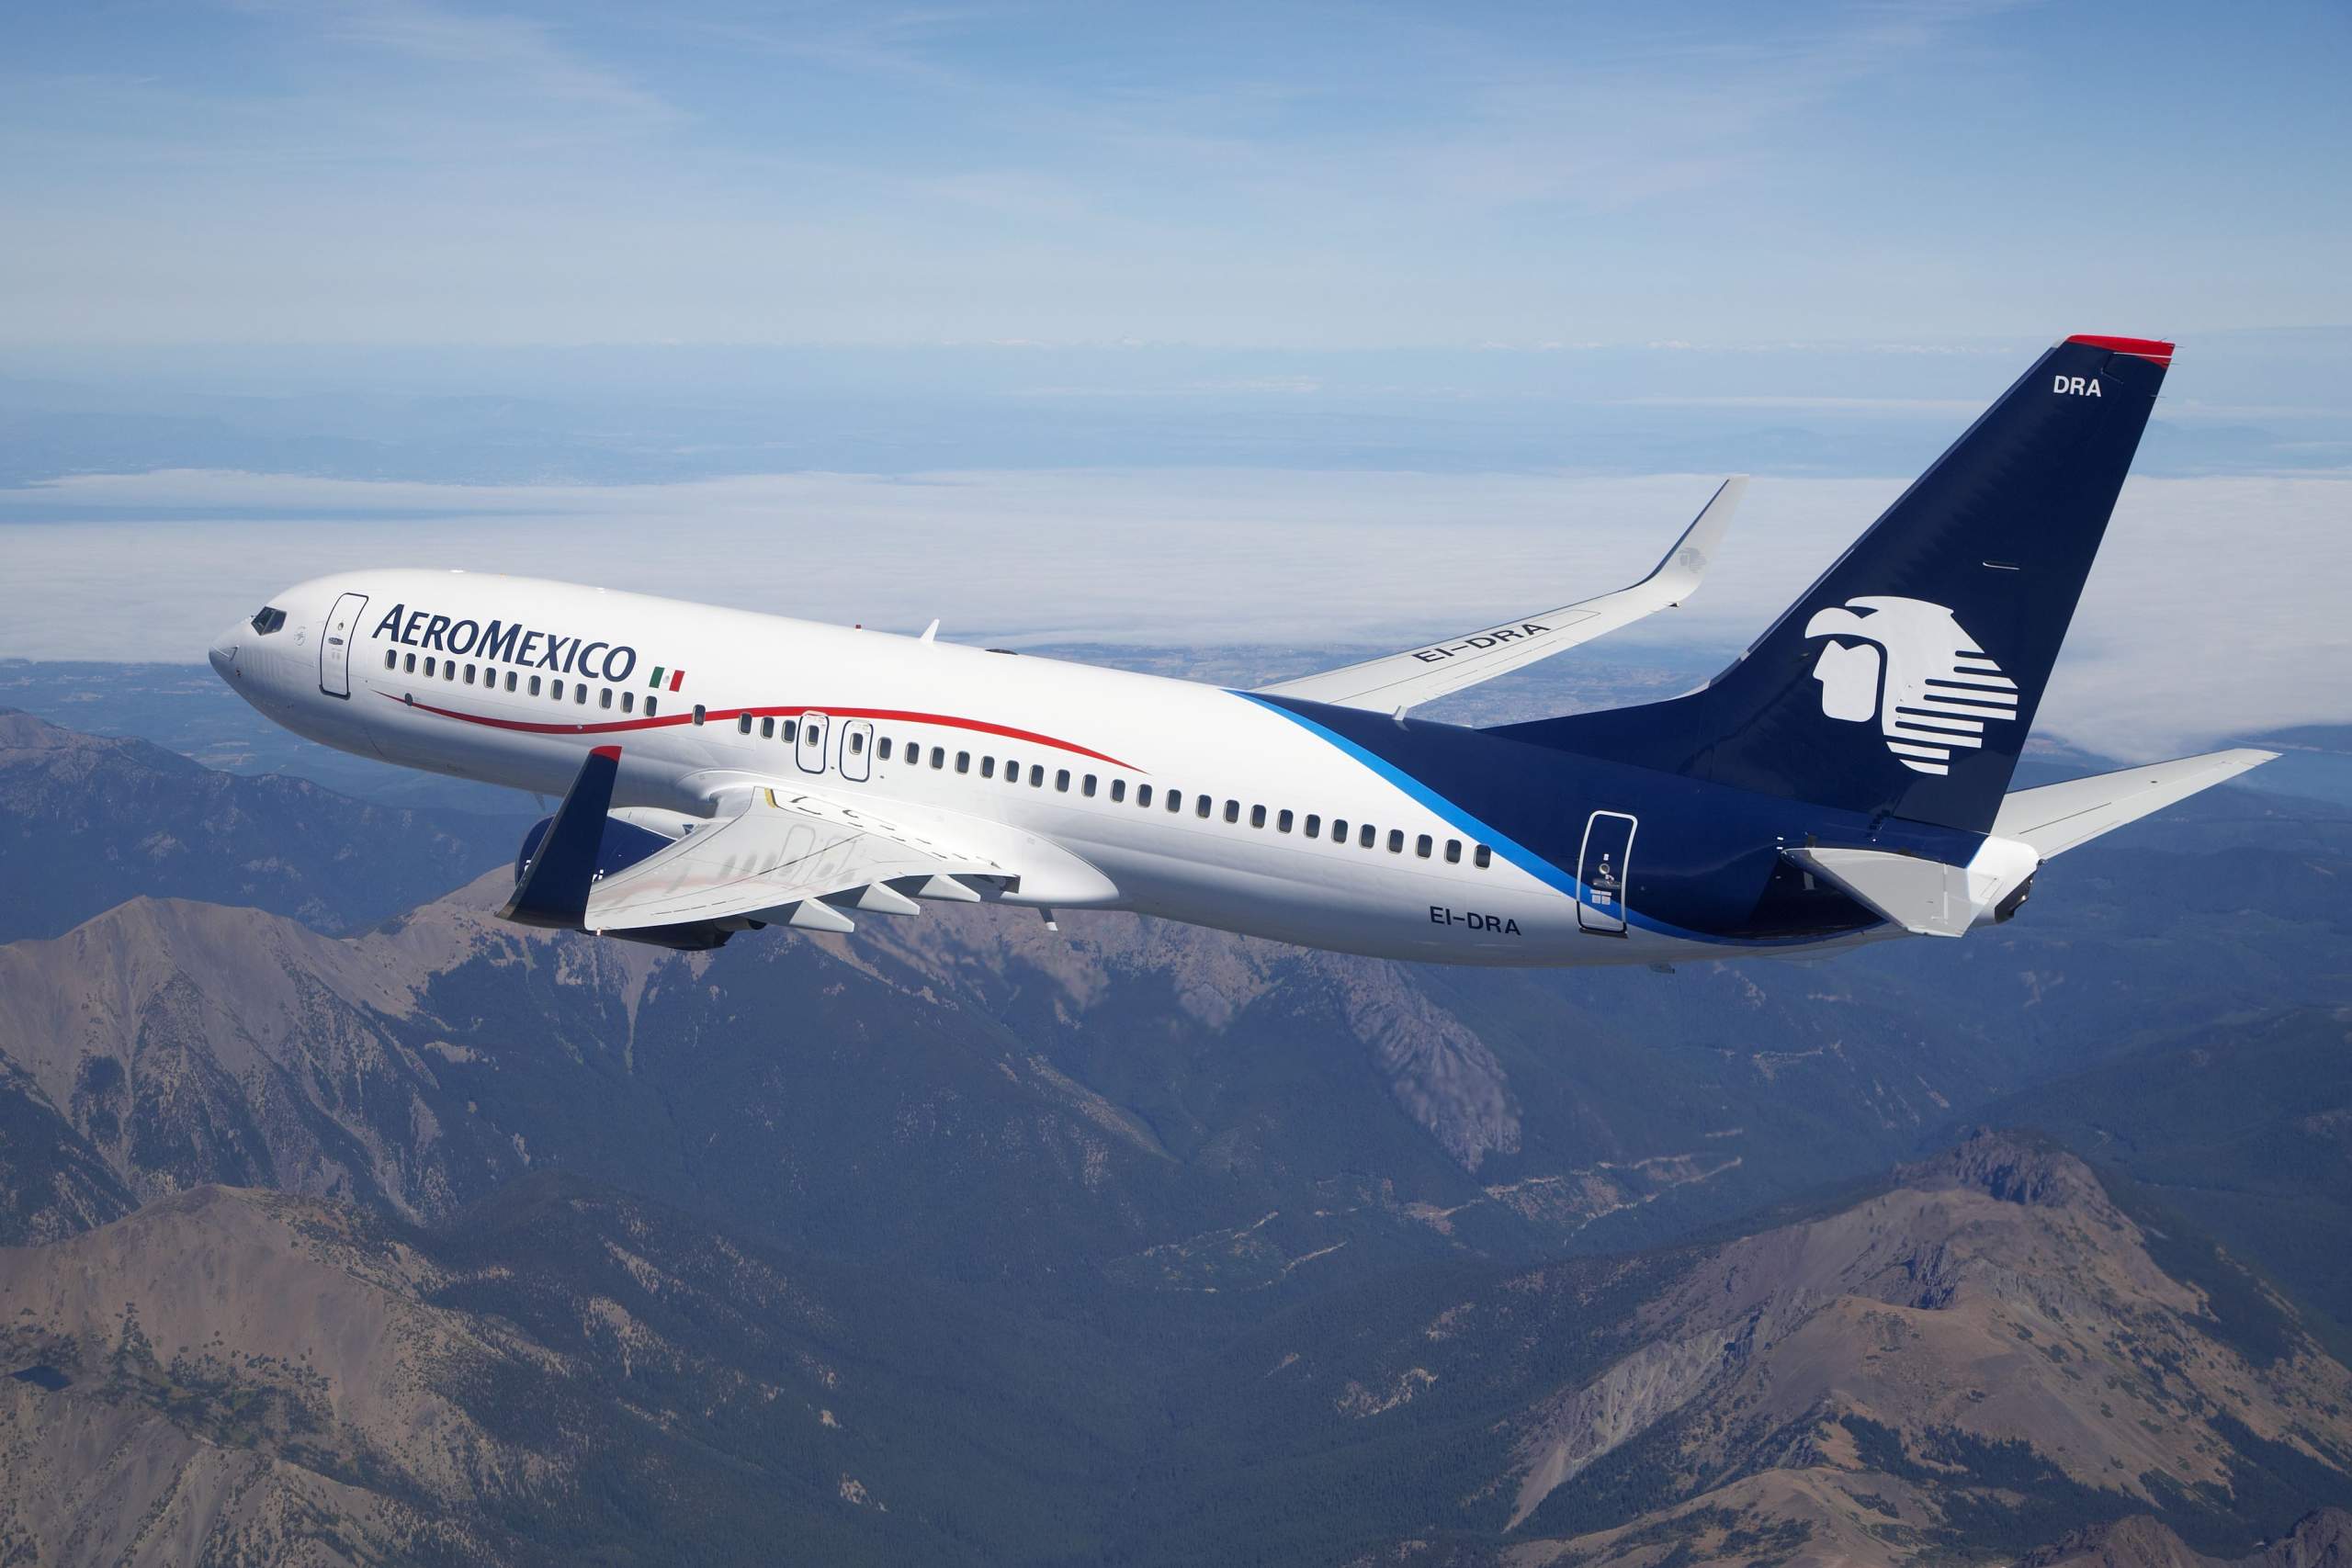 Aeromexico reports US$1 billion in revenues